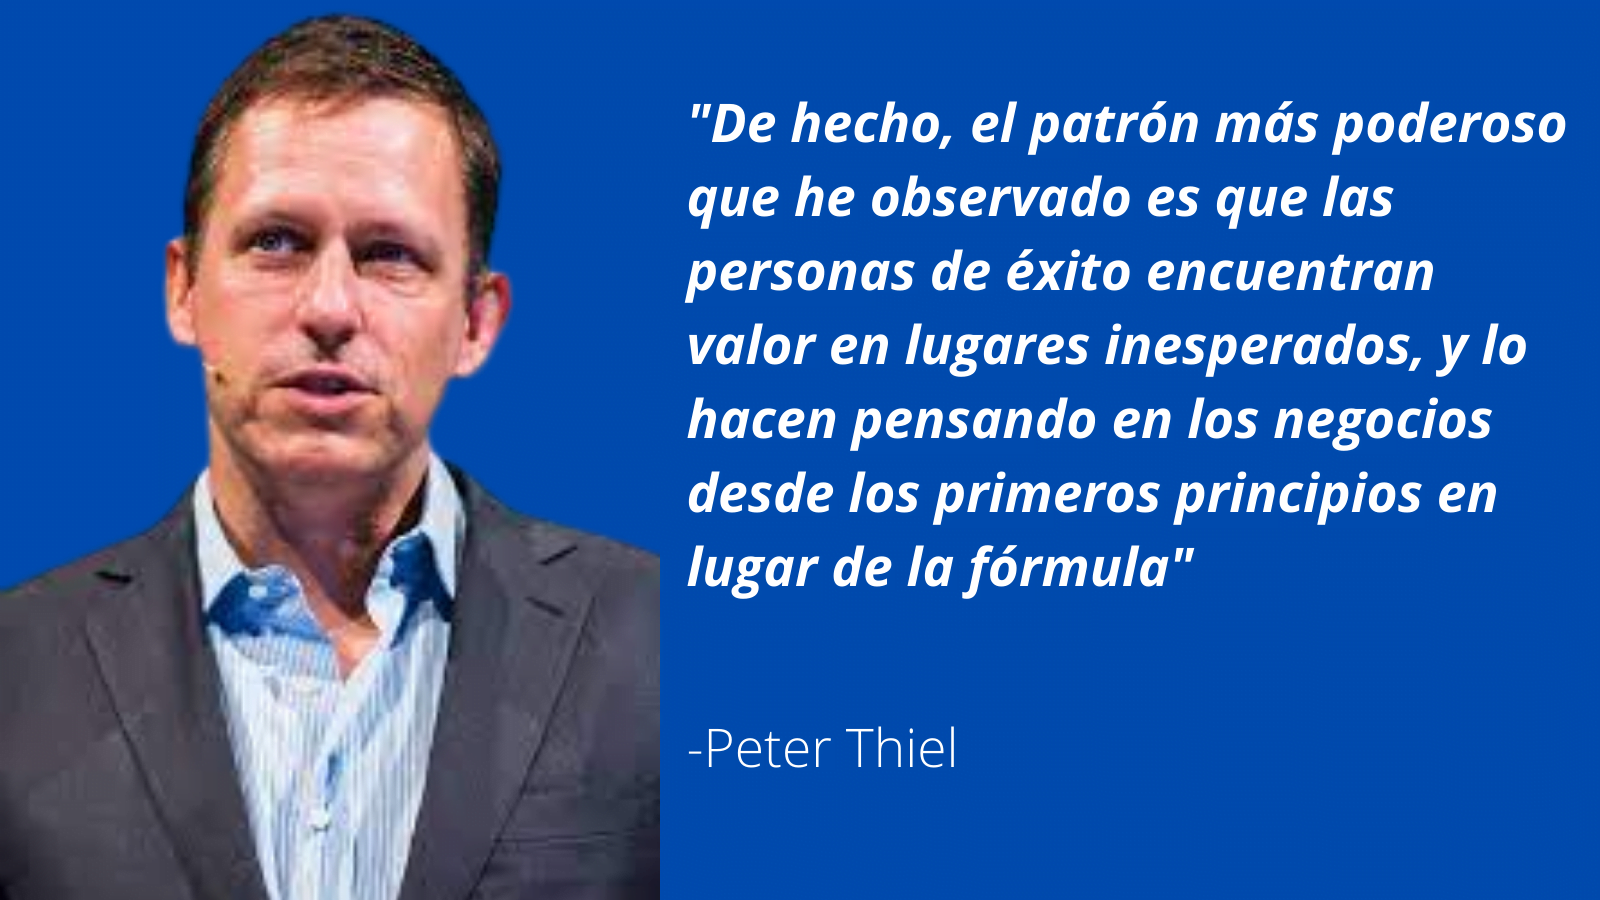 Peter Thiel y los Primeros Principios